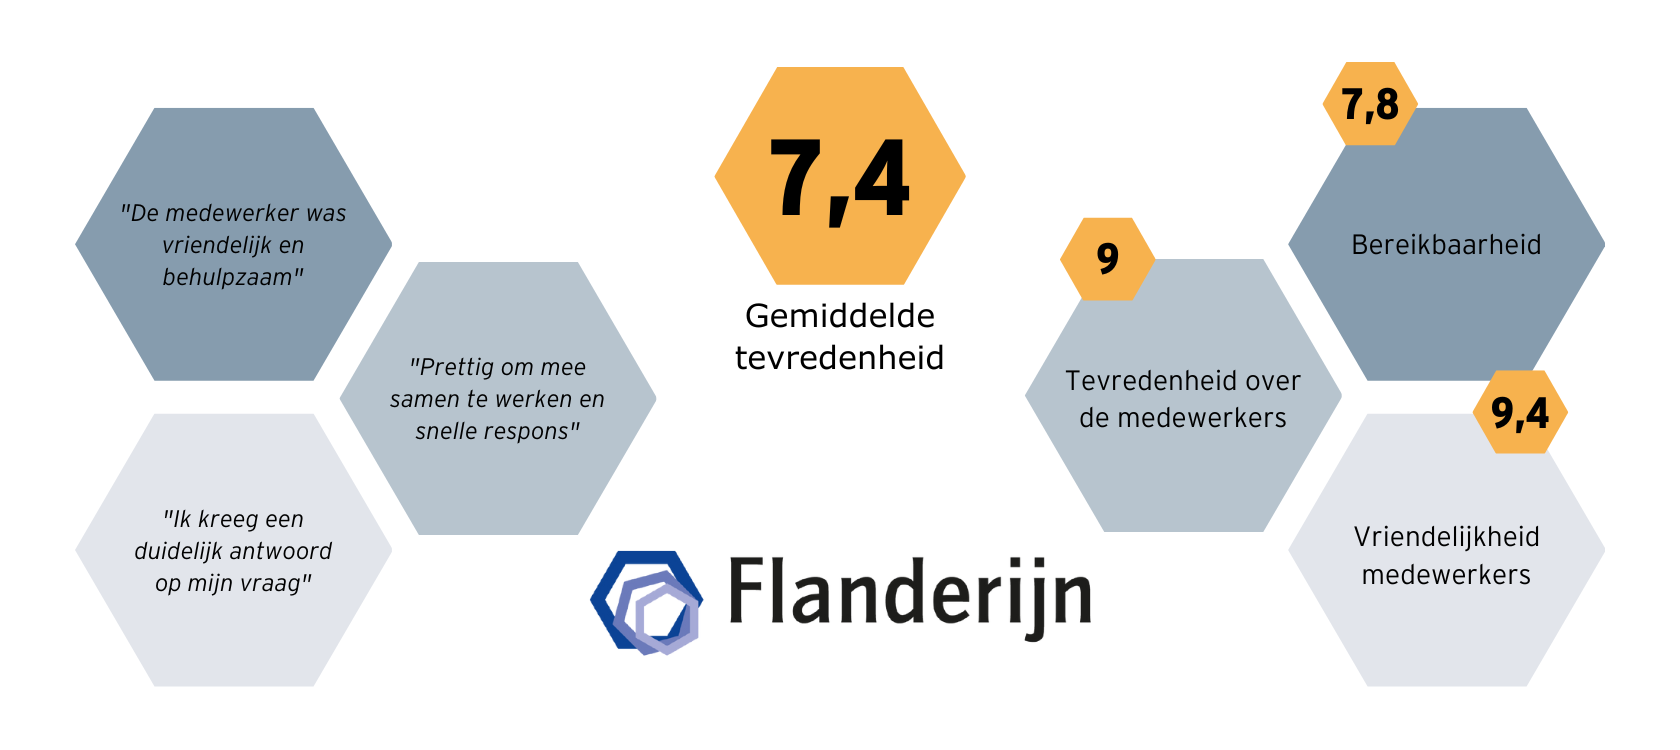 Resultaten Flanderijn KTO oktober